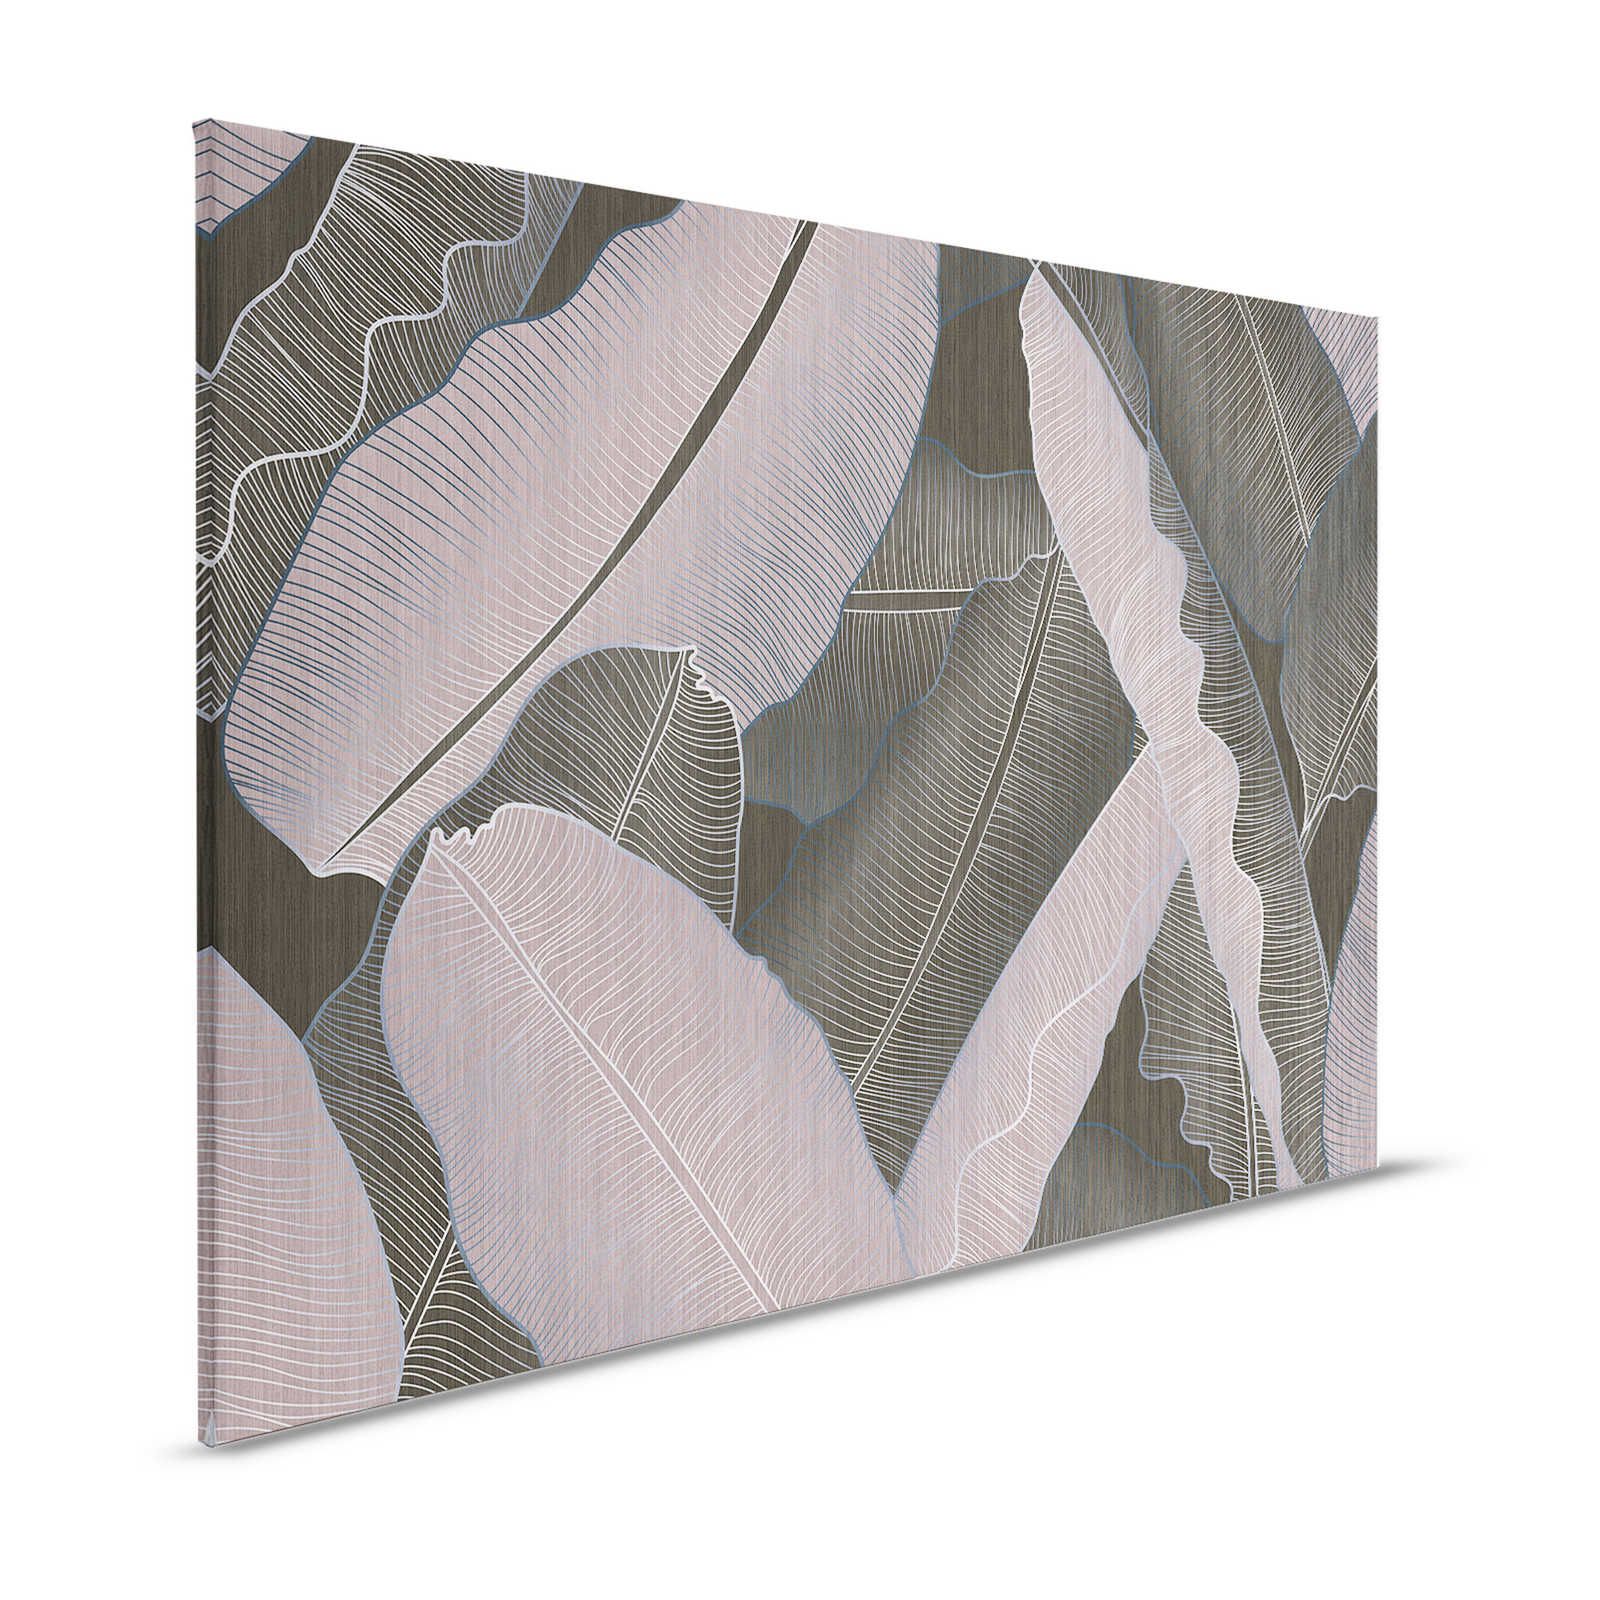 Sotto la copertura 2 - Pittura su tela con foglie di palma in stile disegno grigio e rosa - 1,20 m x 0,80 m
